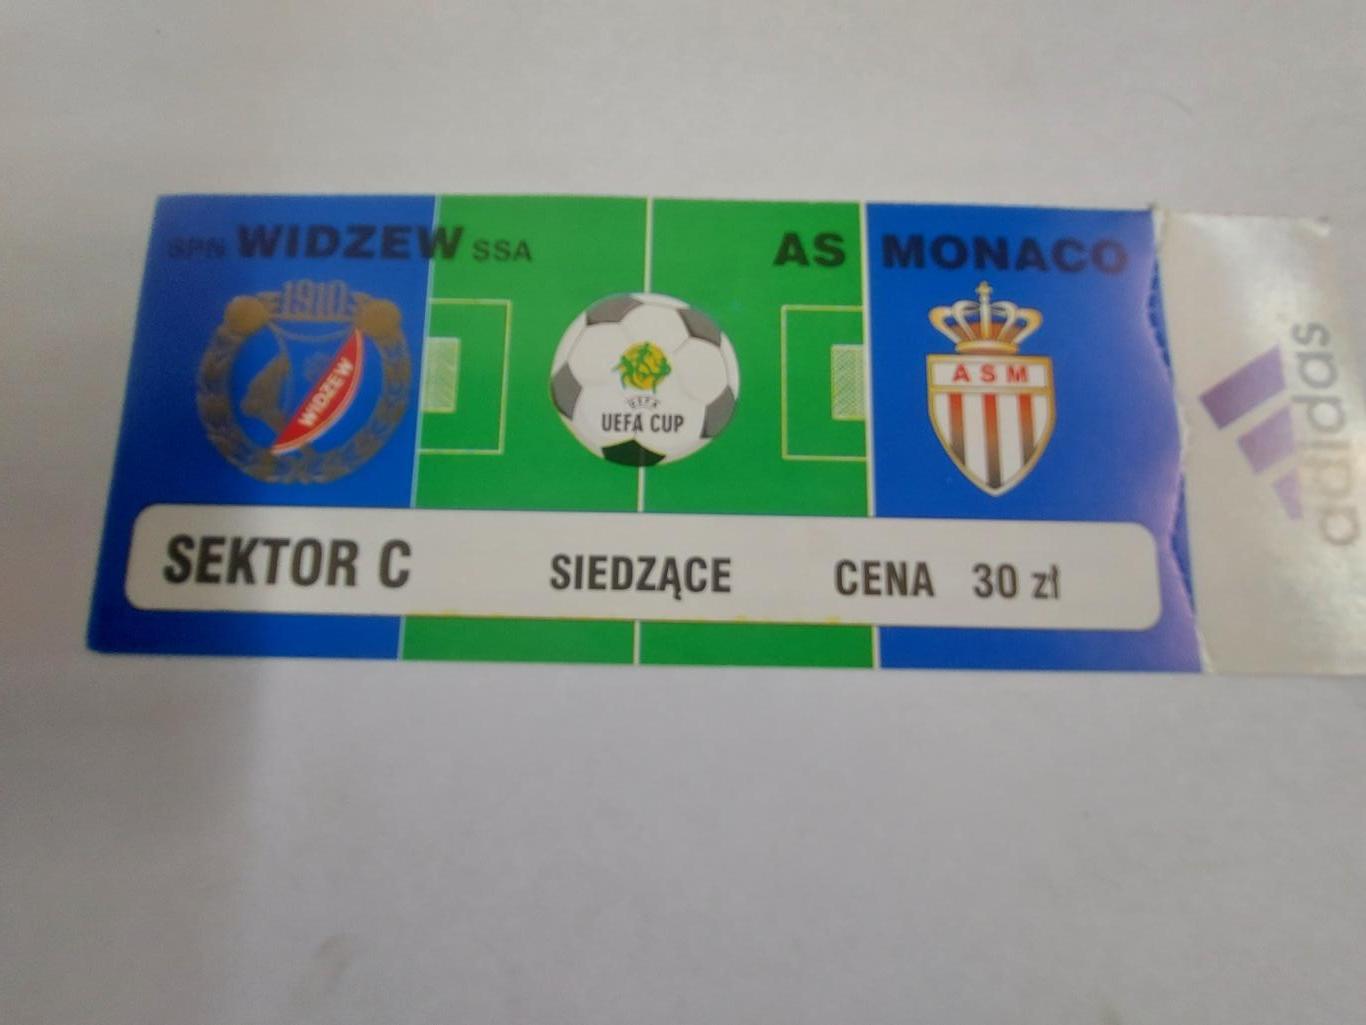 Видзев - Монако, Widzew - Monaco 1999